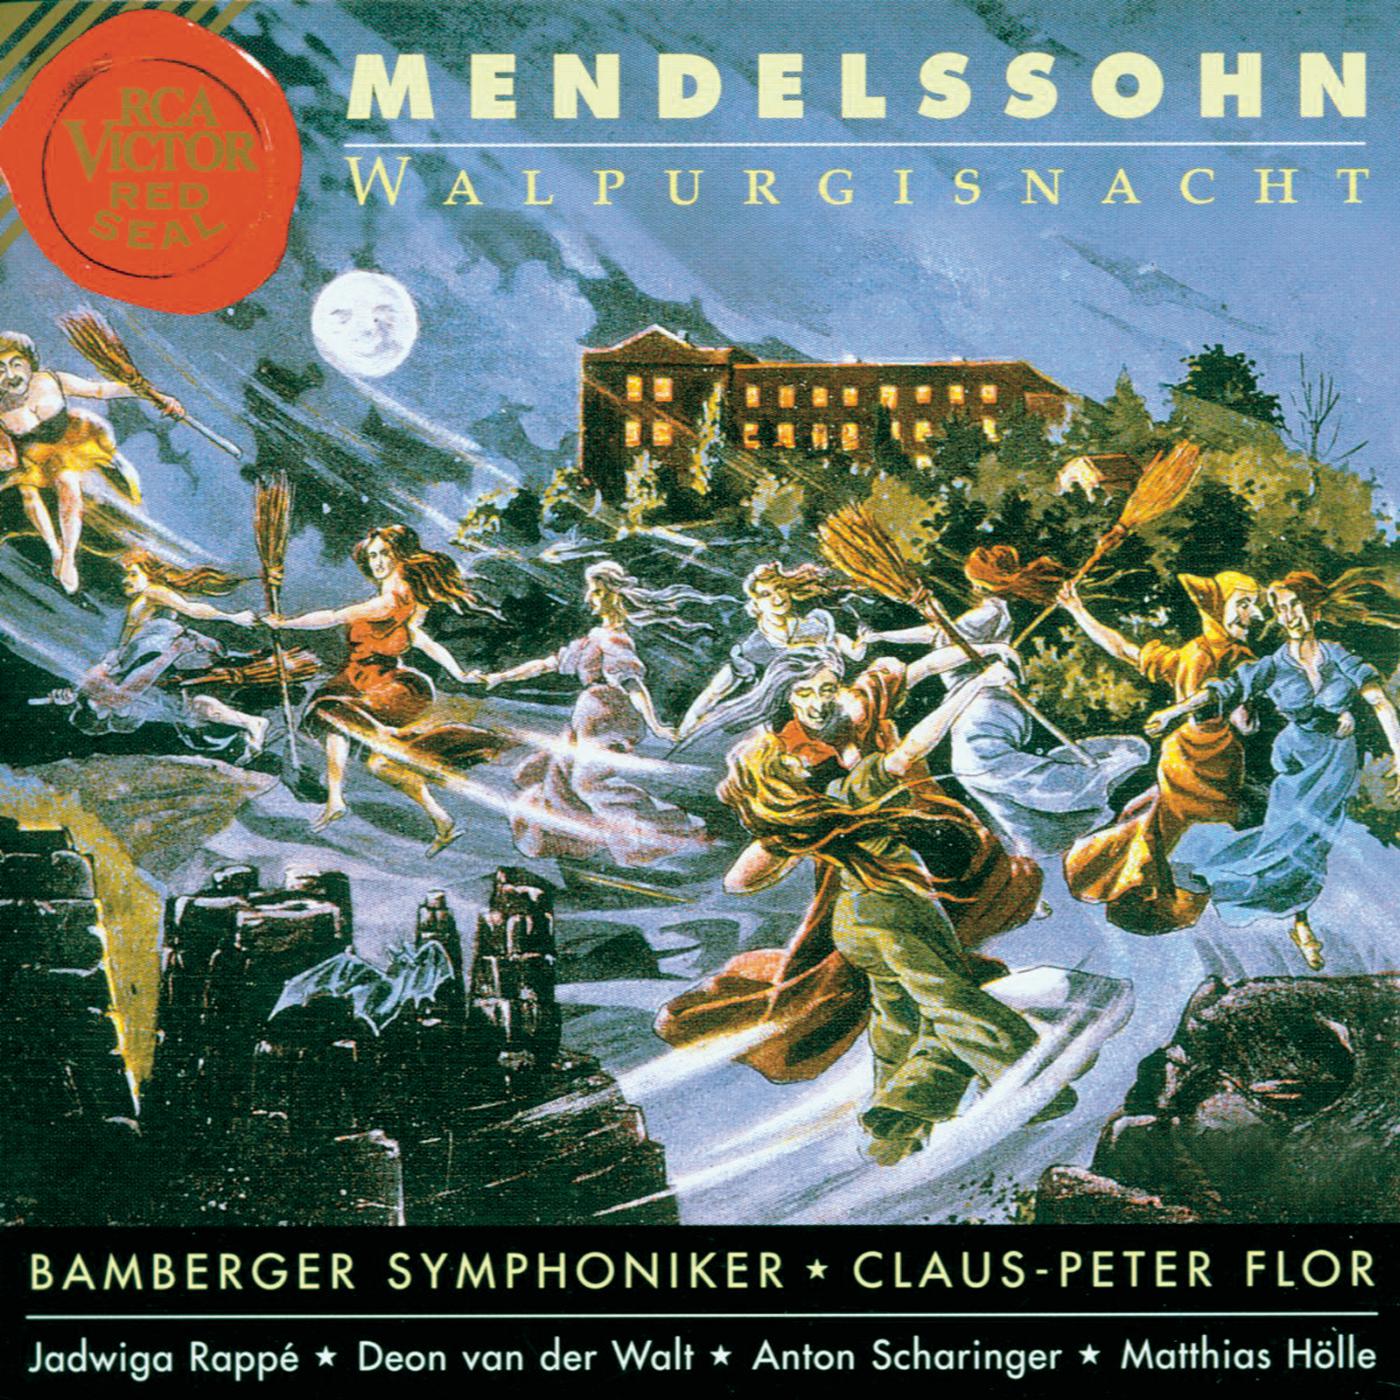 Leise zieht durch mein Gemü th, 12 Lieder von Mendelssohn, Arr. for Orchestra by Siegfried Matthus: Reiselied, Op. 34, No. 6: " Der Herbstwind rü ttelt die B ume"